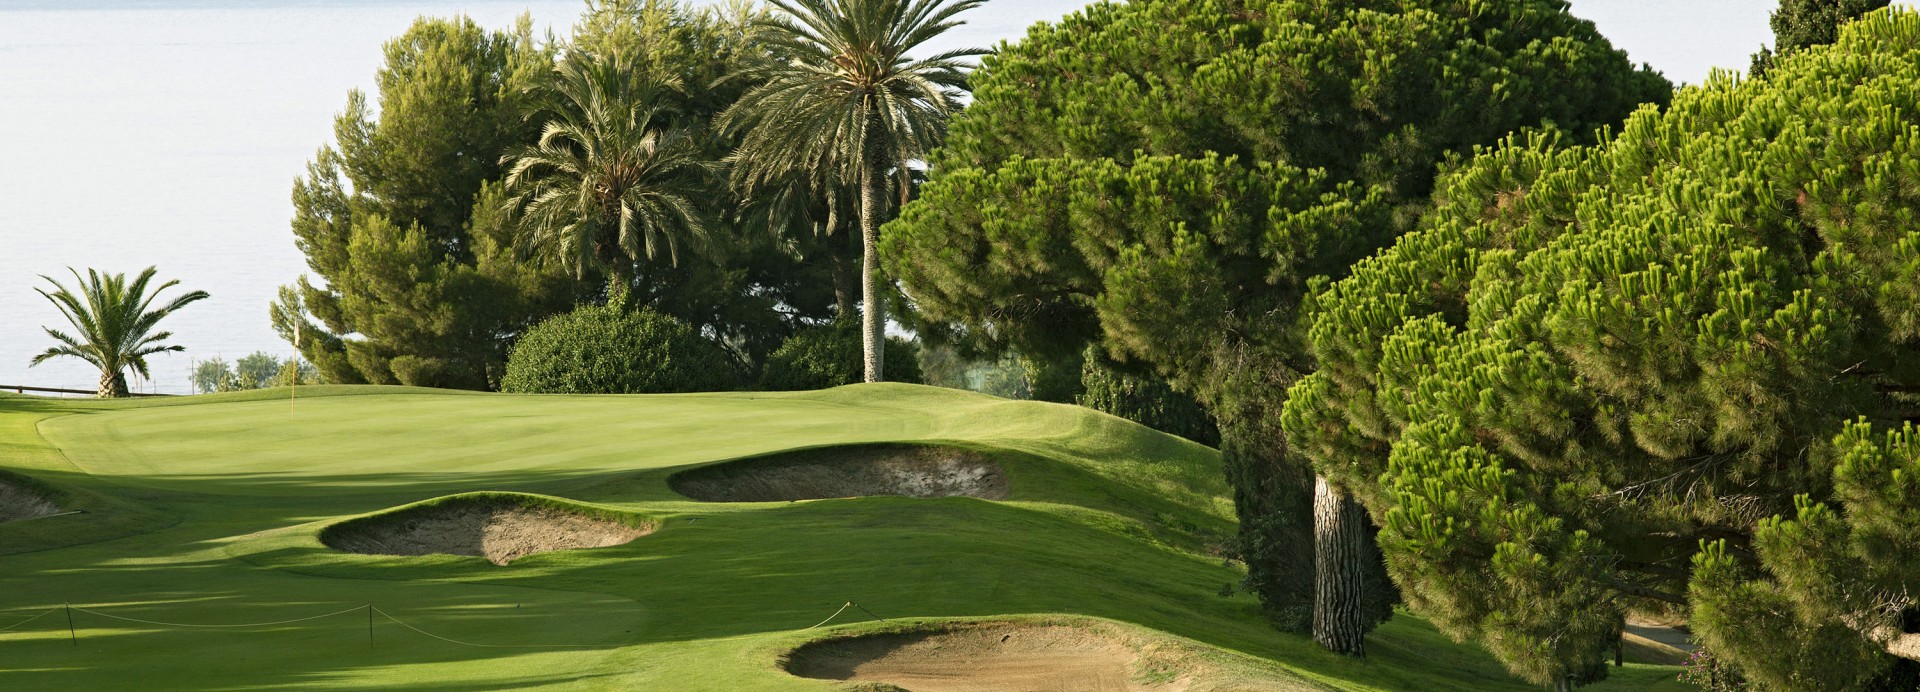 Club de Golf Llavaneras  | Golfové zájezdy, golfová dovolená, luxusní golf